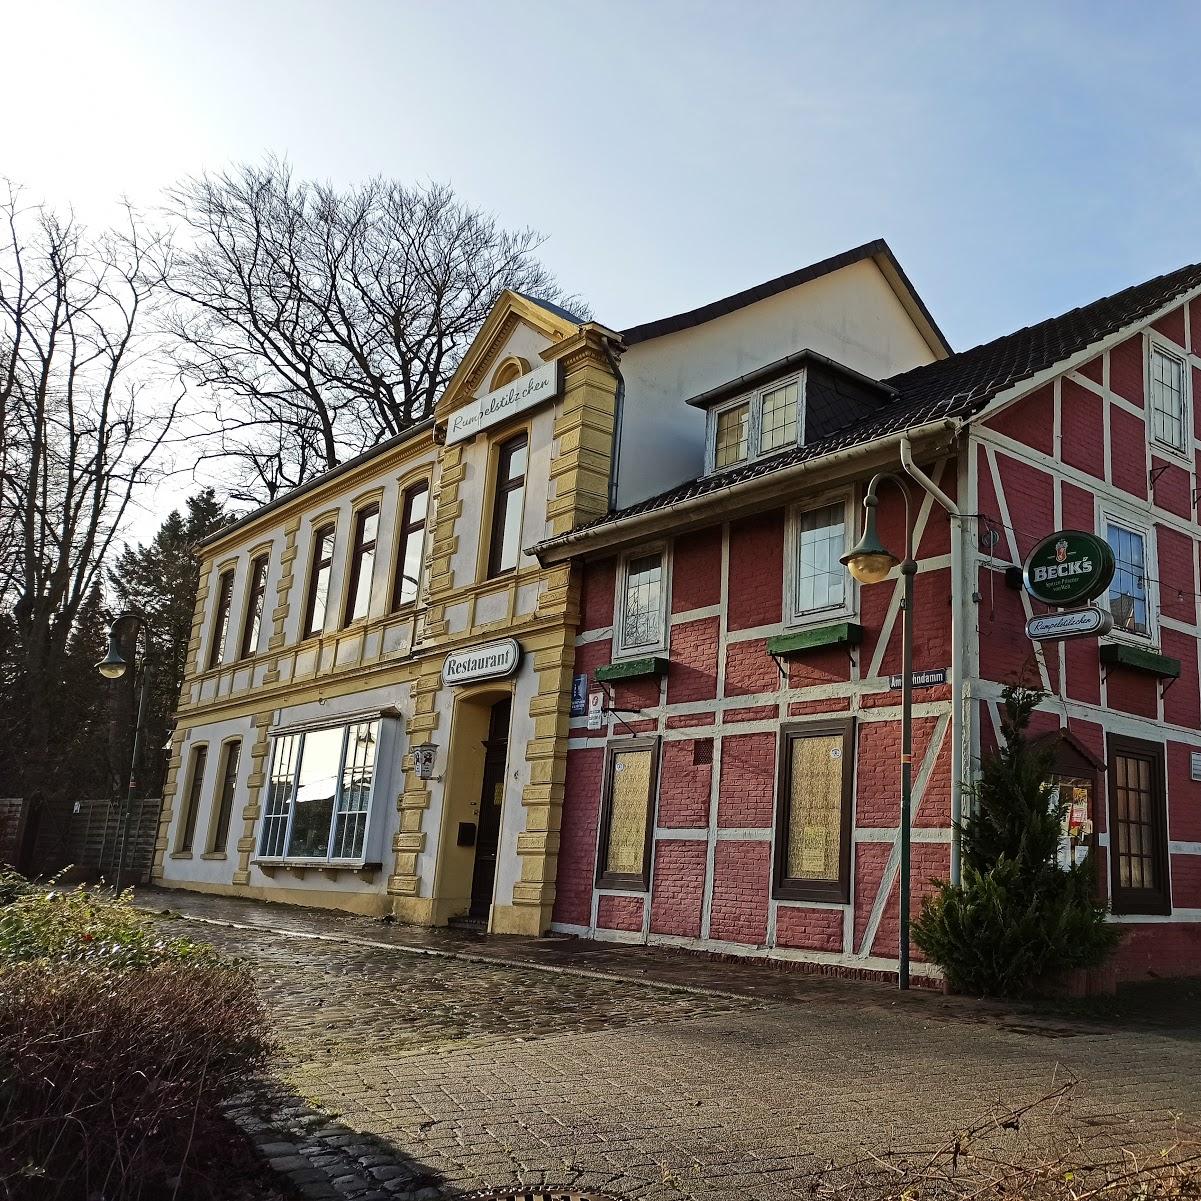 Restaurant "Rumpelstilzchen" in  Osterholz-Scharmbeck